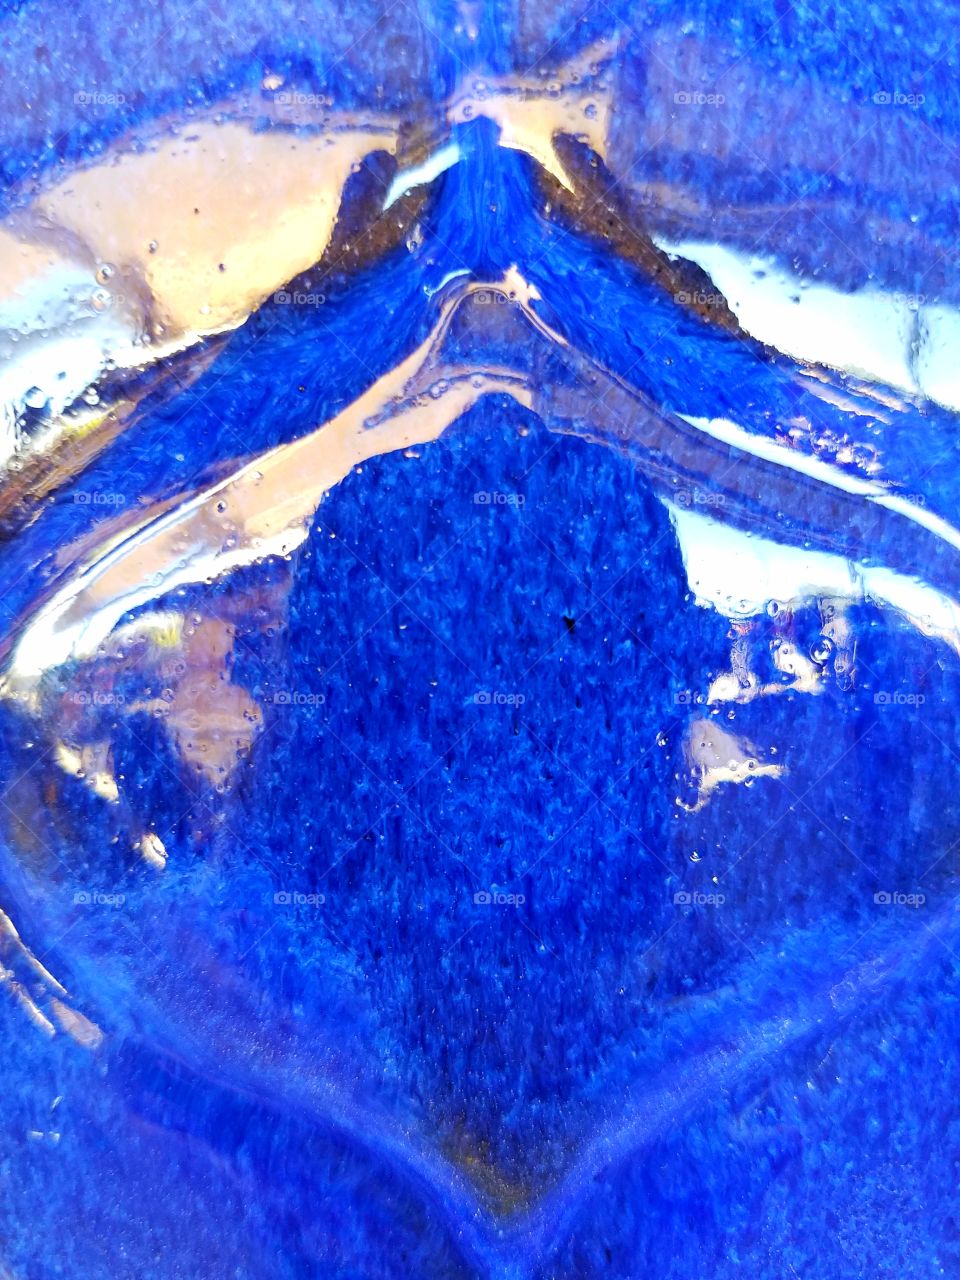 Bright blue Glazed pottery